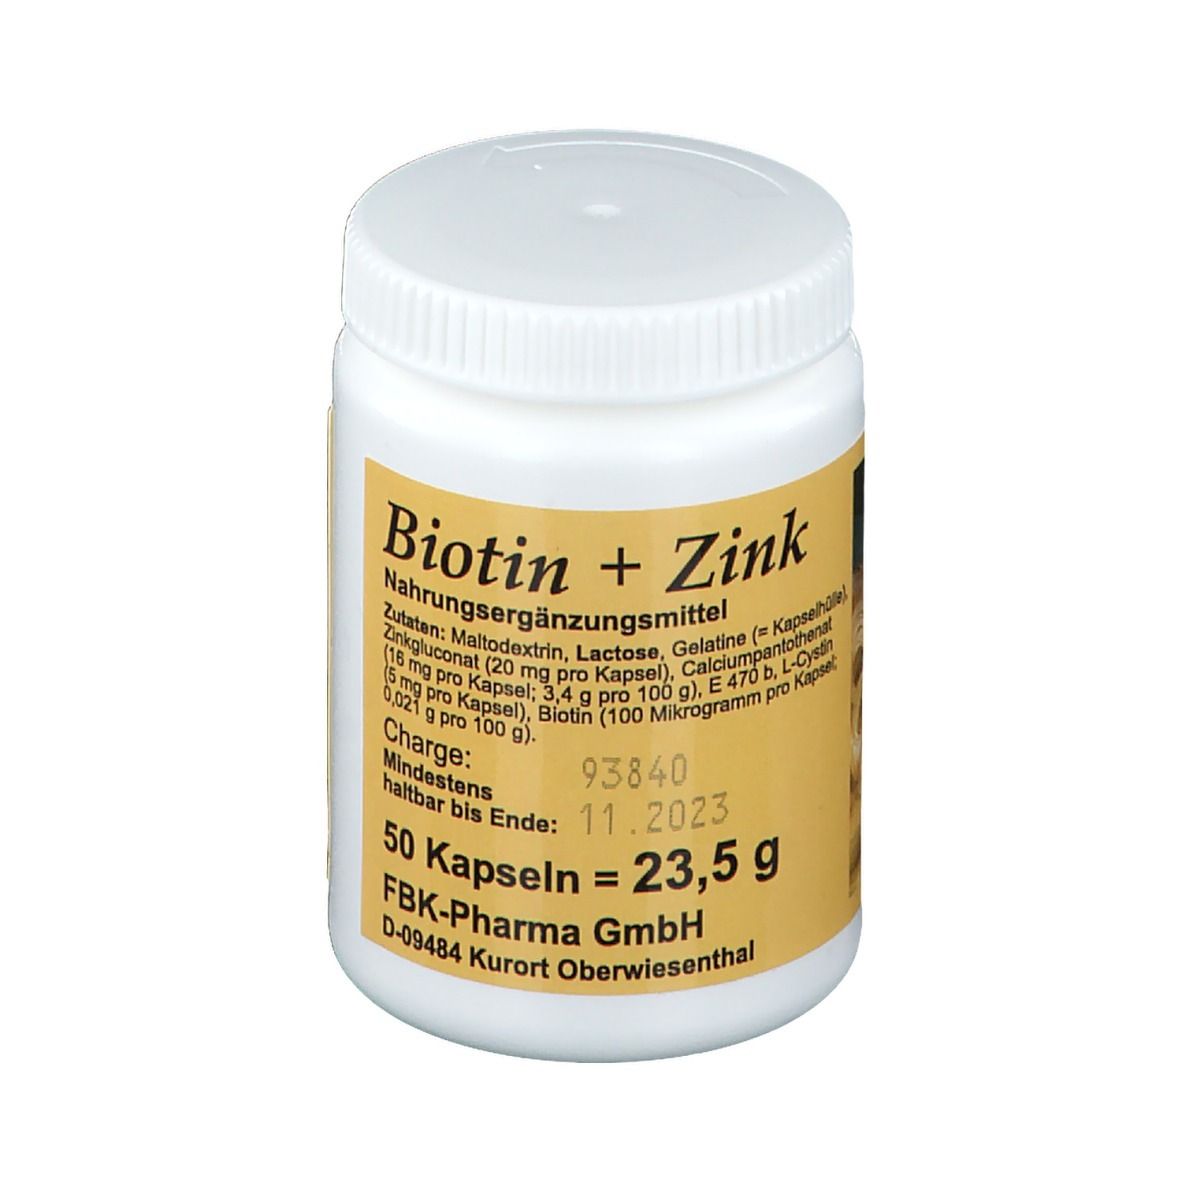 Biotin + Zink